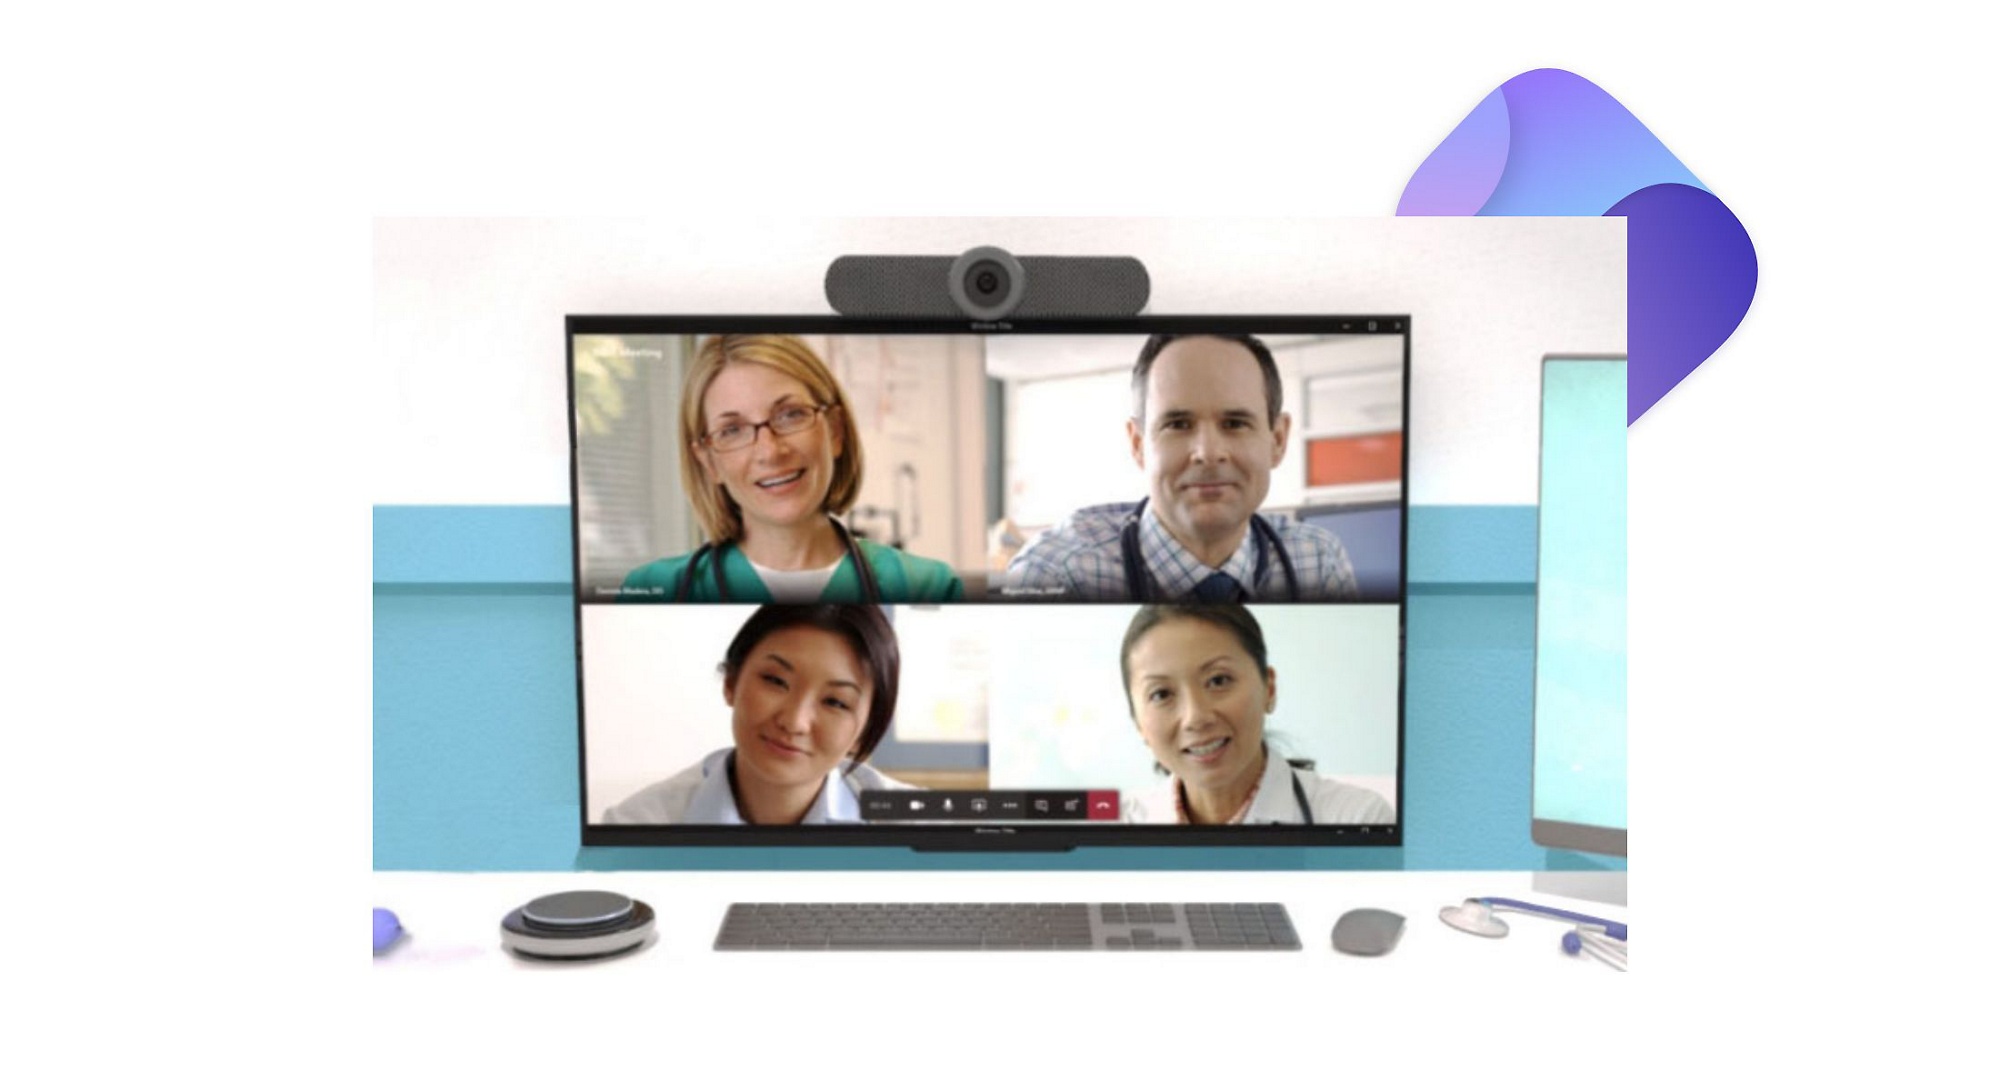 Una videollamada de Teams en curso en un escritorio con un monitor, una cámara y un altavoz inteligente.